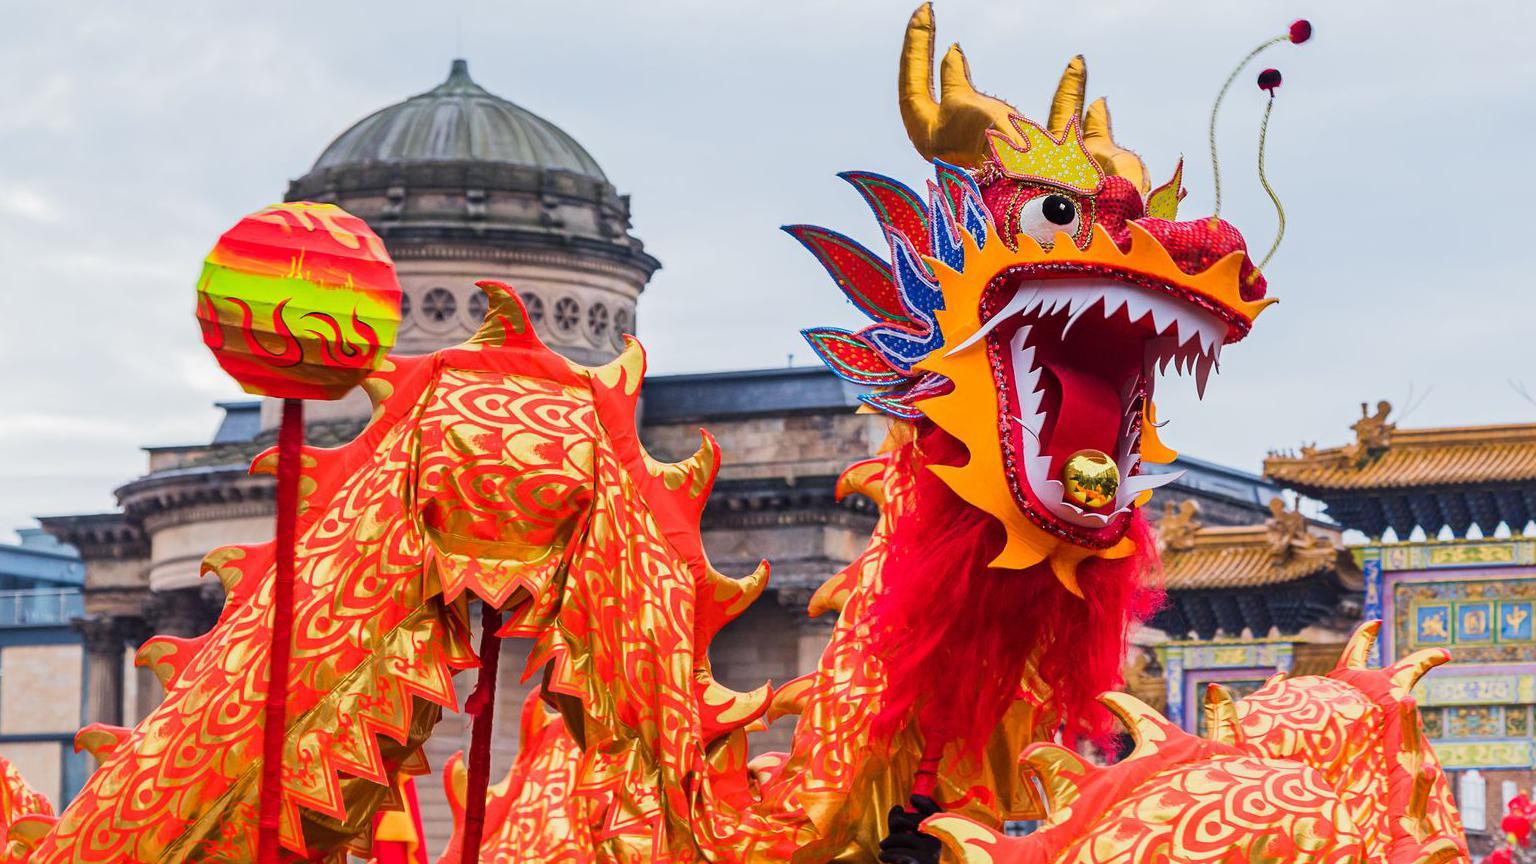 qué significa el dragón de madera, el símbolo del año nuevo chino